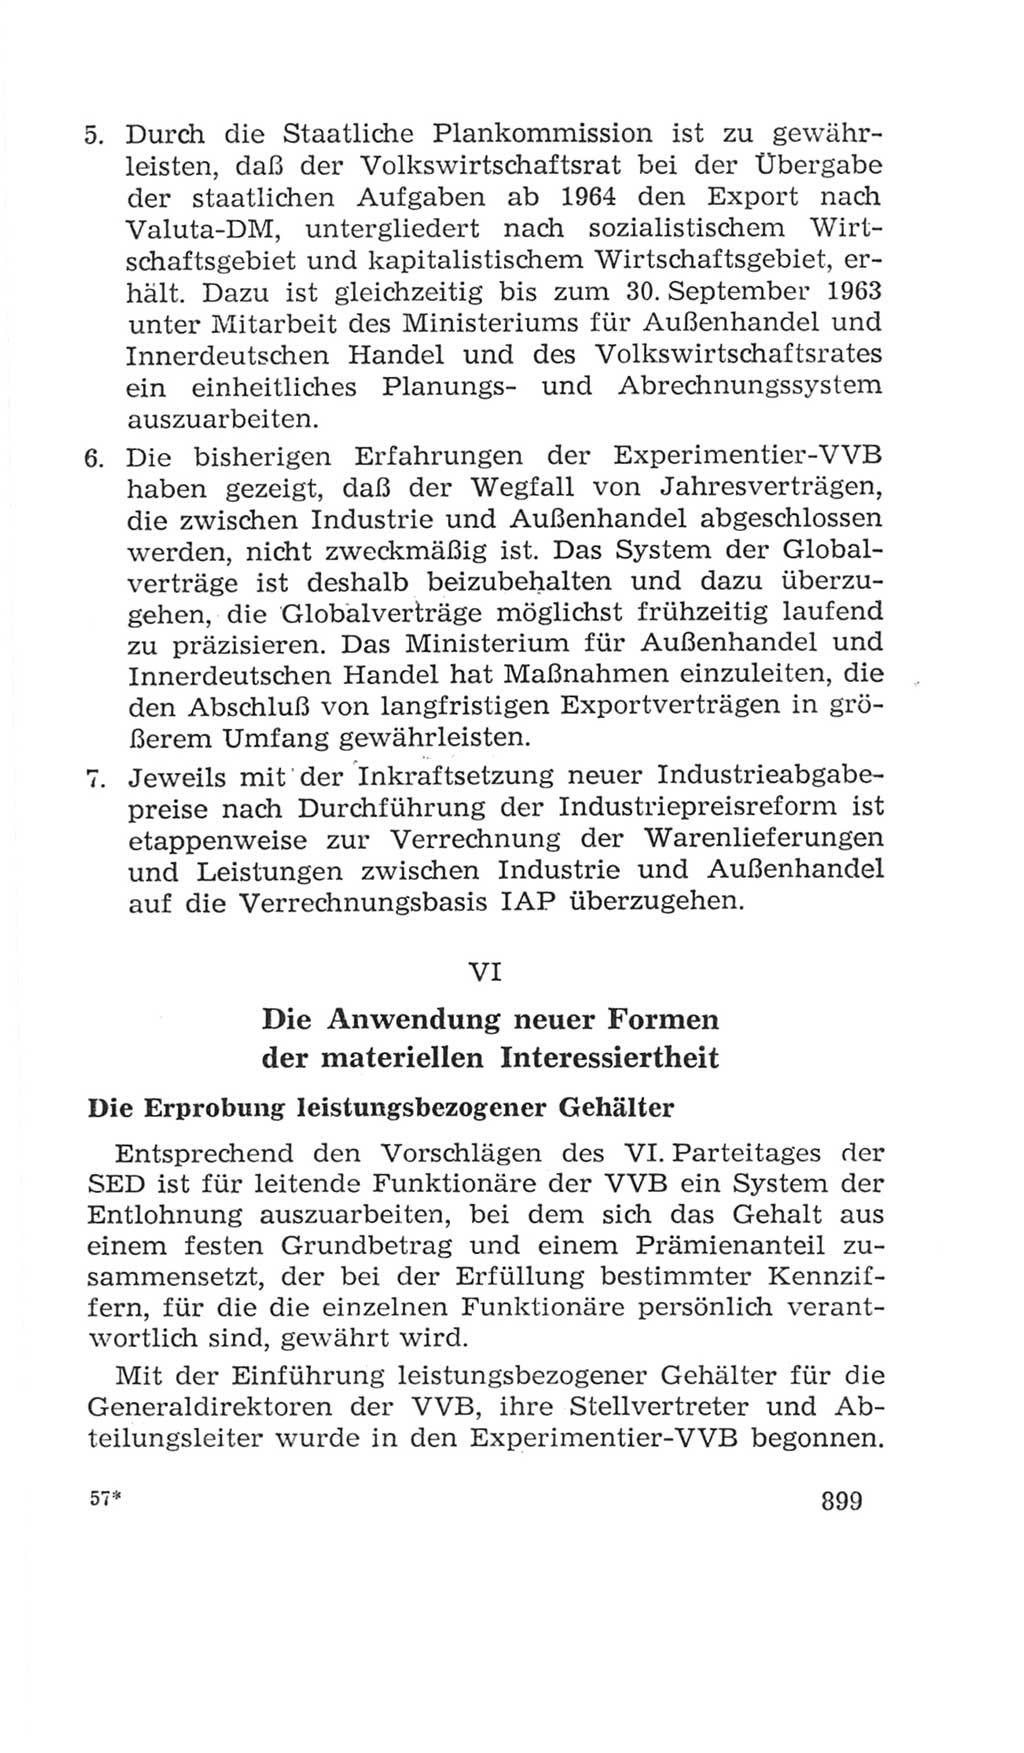 Volkskammer (VK) der Deutschen Demokratischen Republik (DDR), 4. Wahlperiode 1963-1967, Seite 899 (VK. DDR 4. WP. 1963-1967, S. 899)